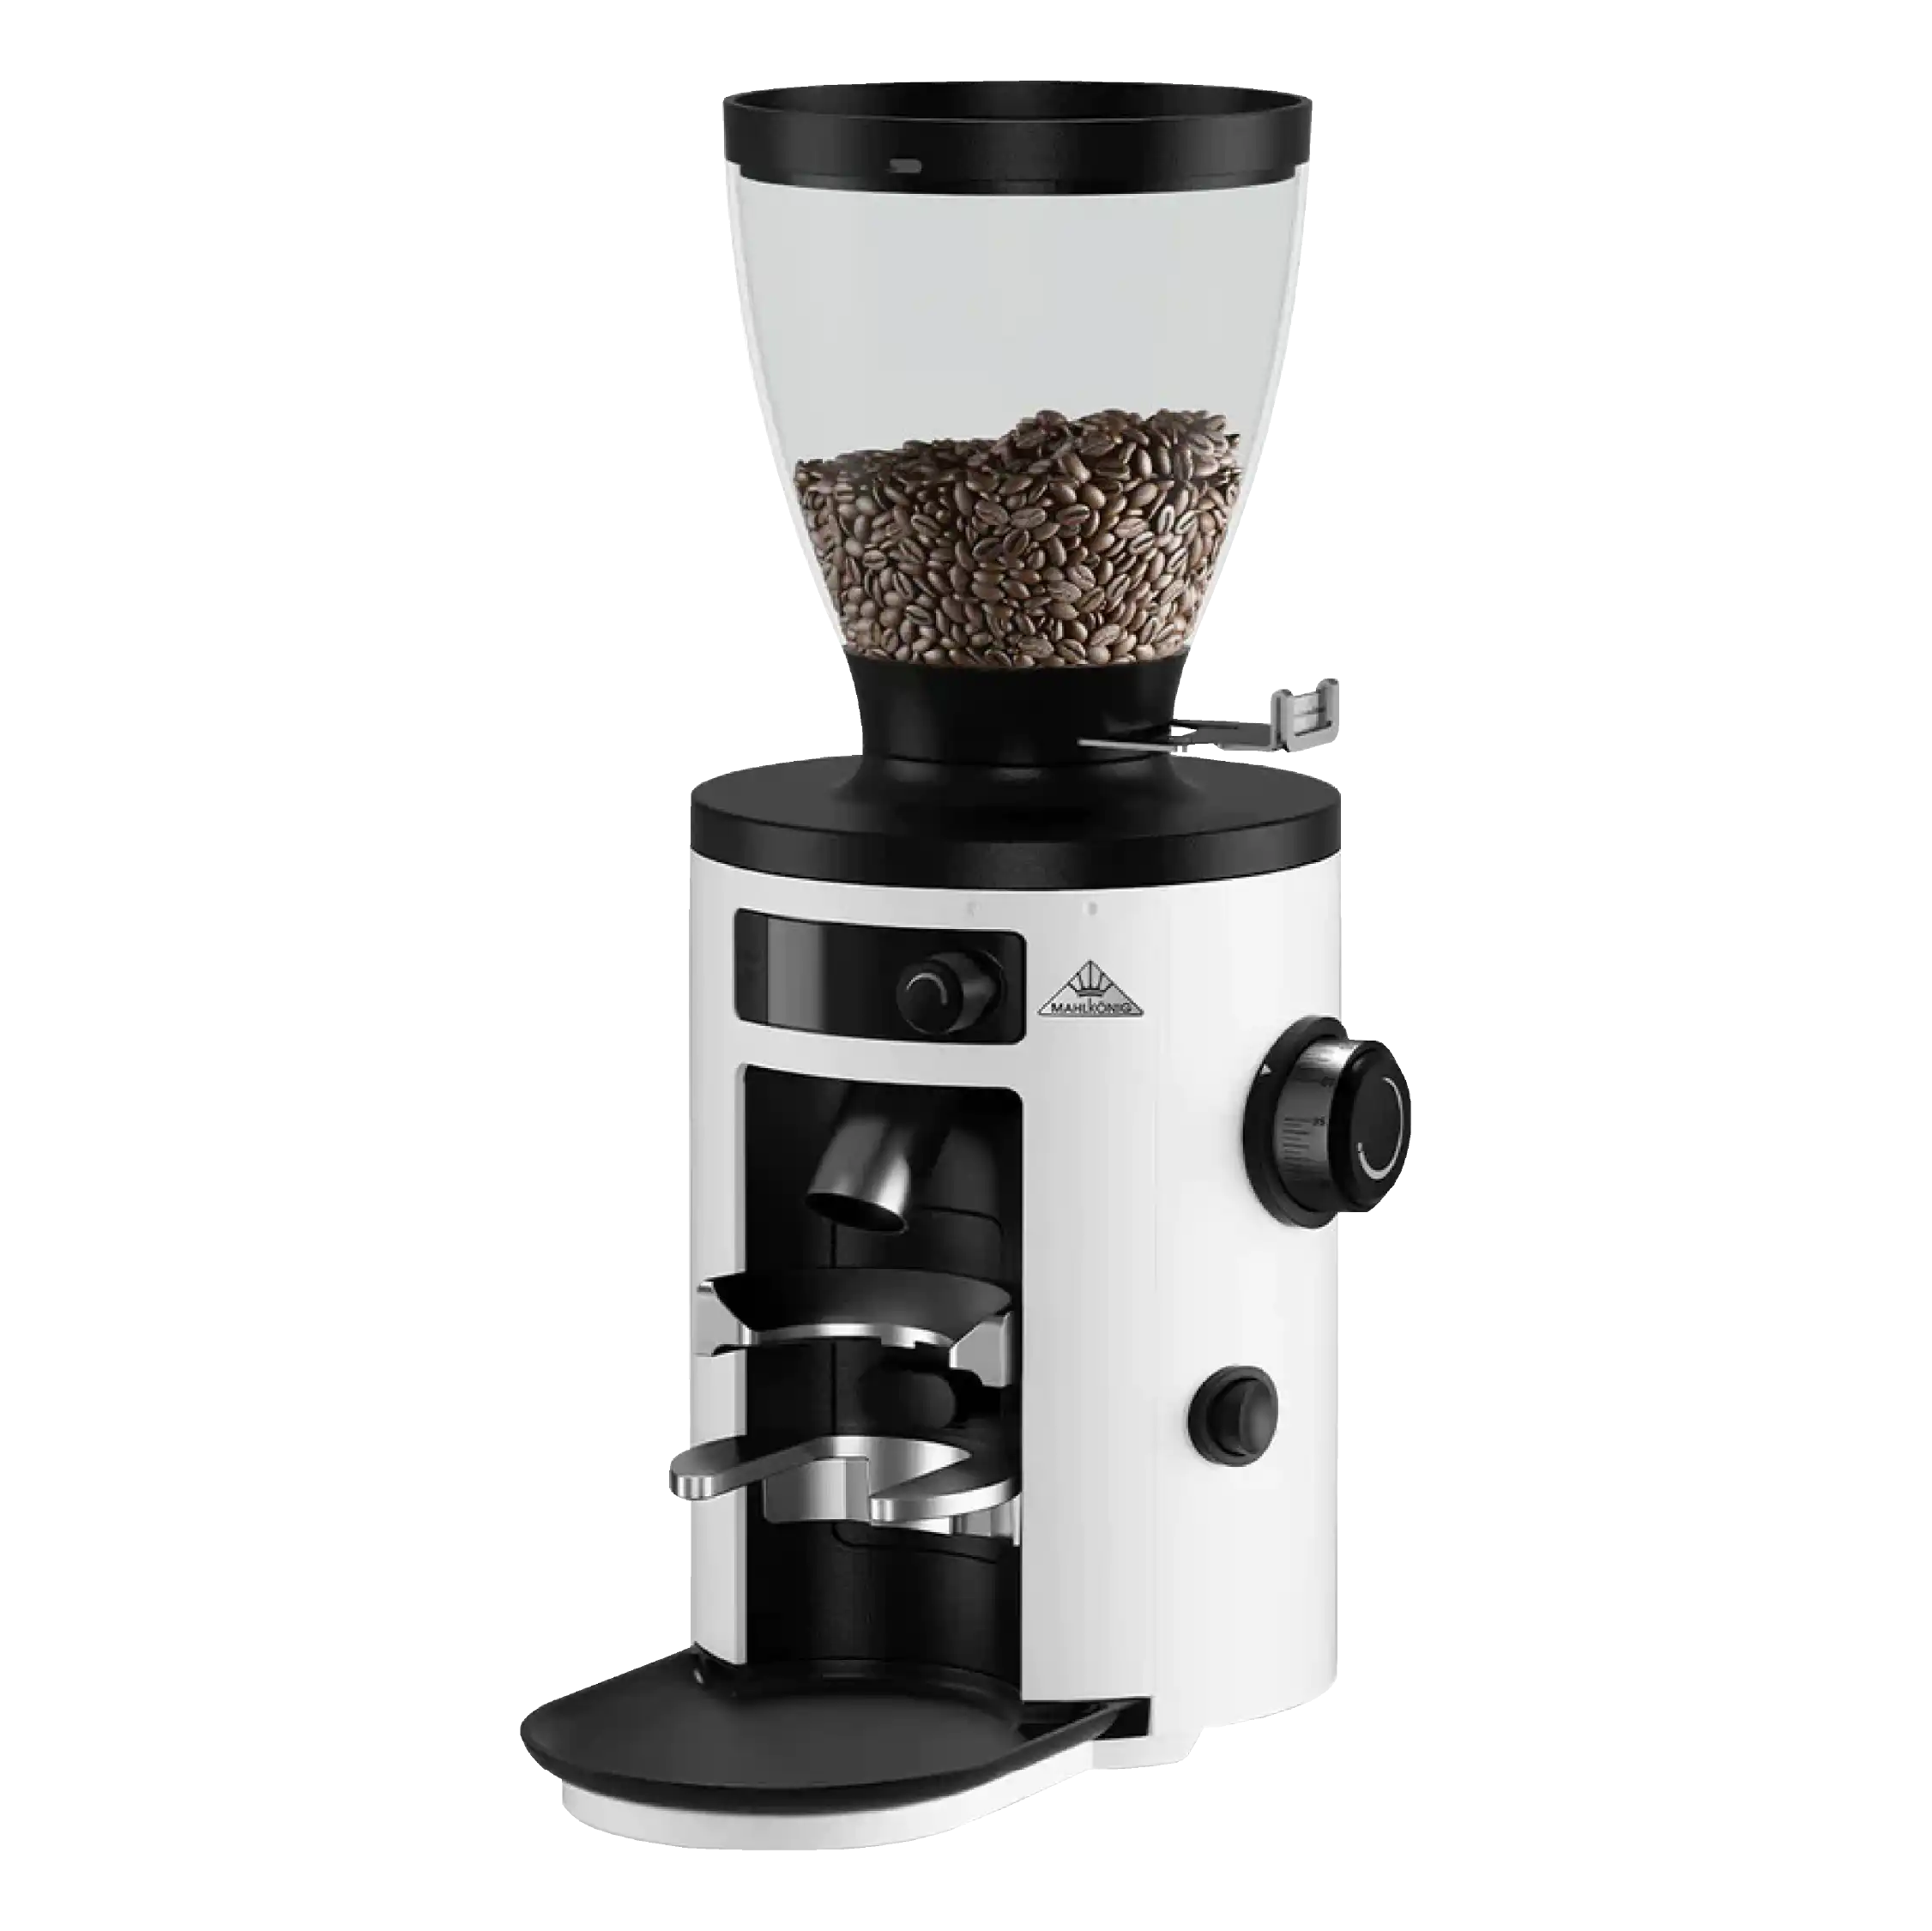 Brand New Ecm Mechanika Rotary Coffee Machine & Mahlkonig X54 Grinder Package